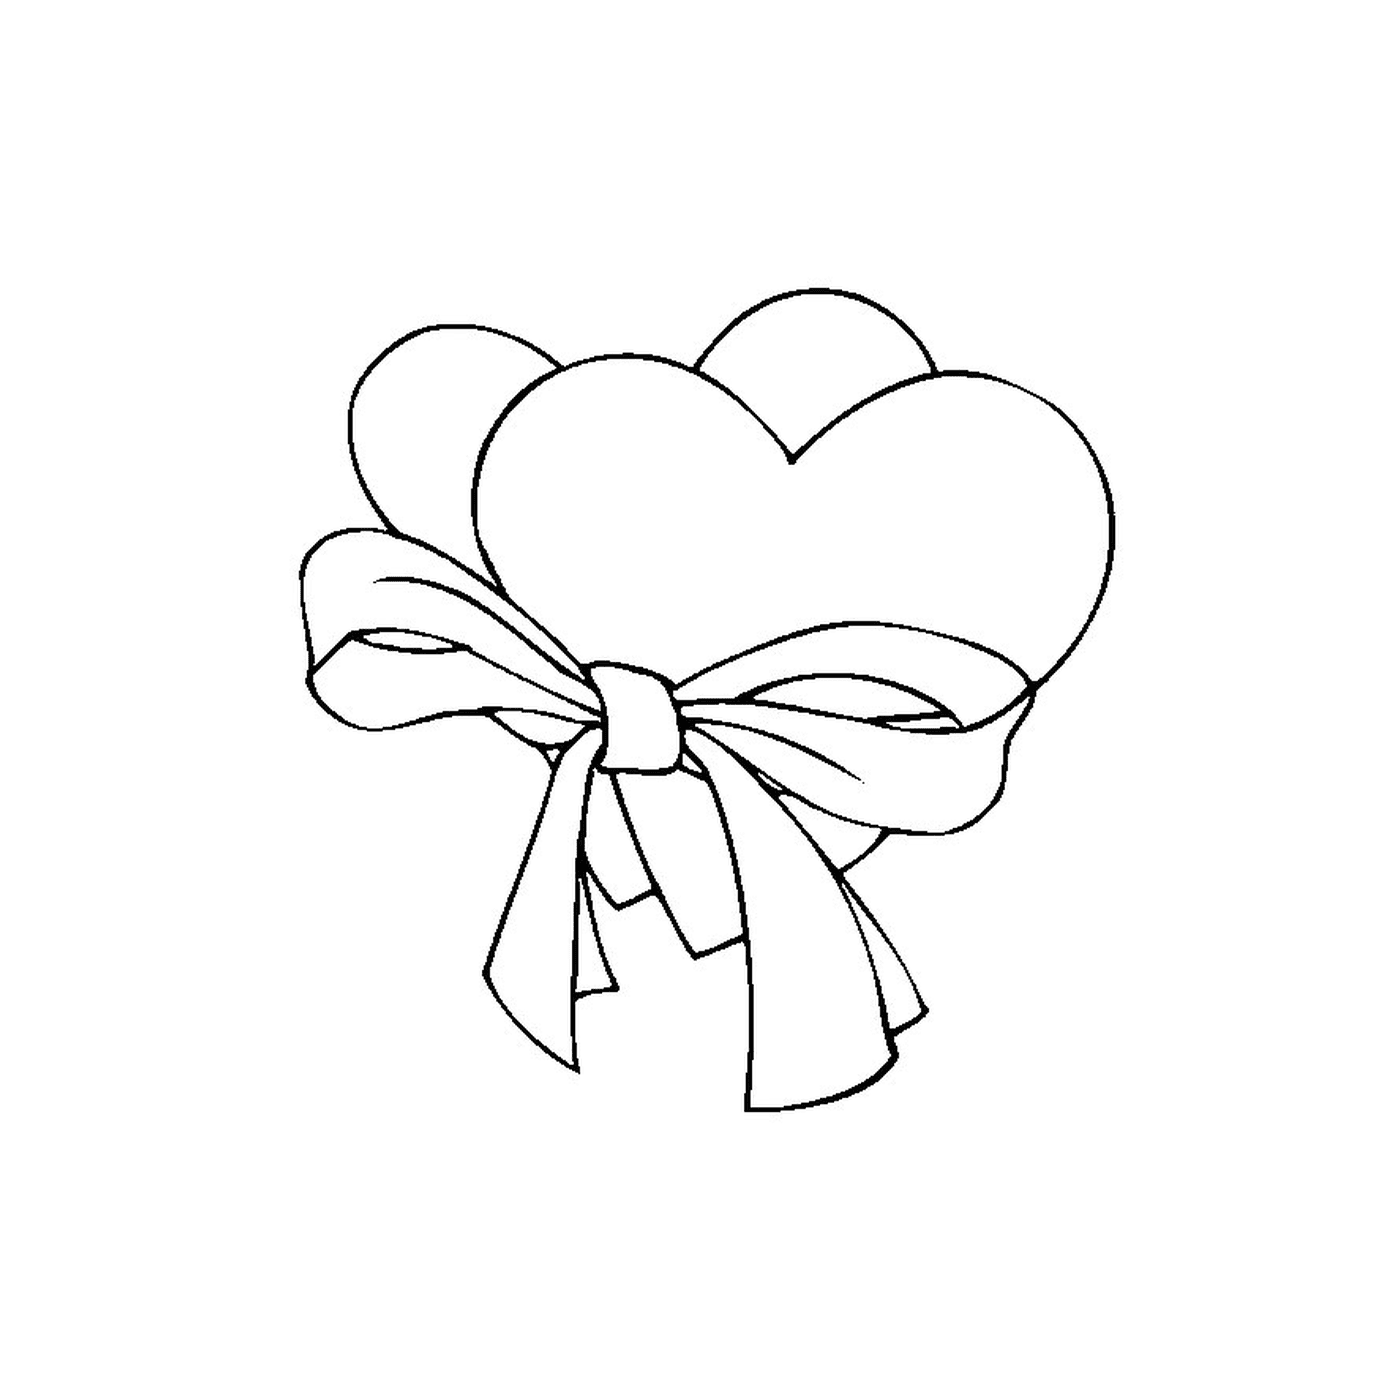  A heart with an arc 